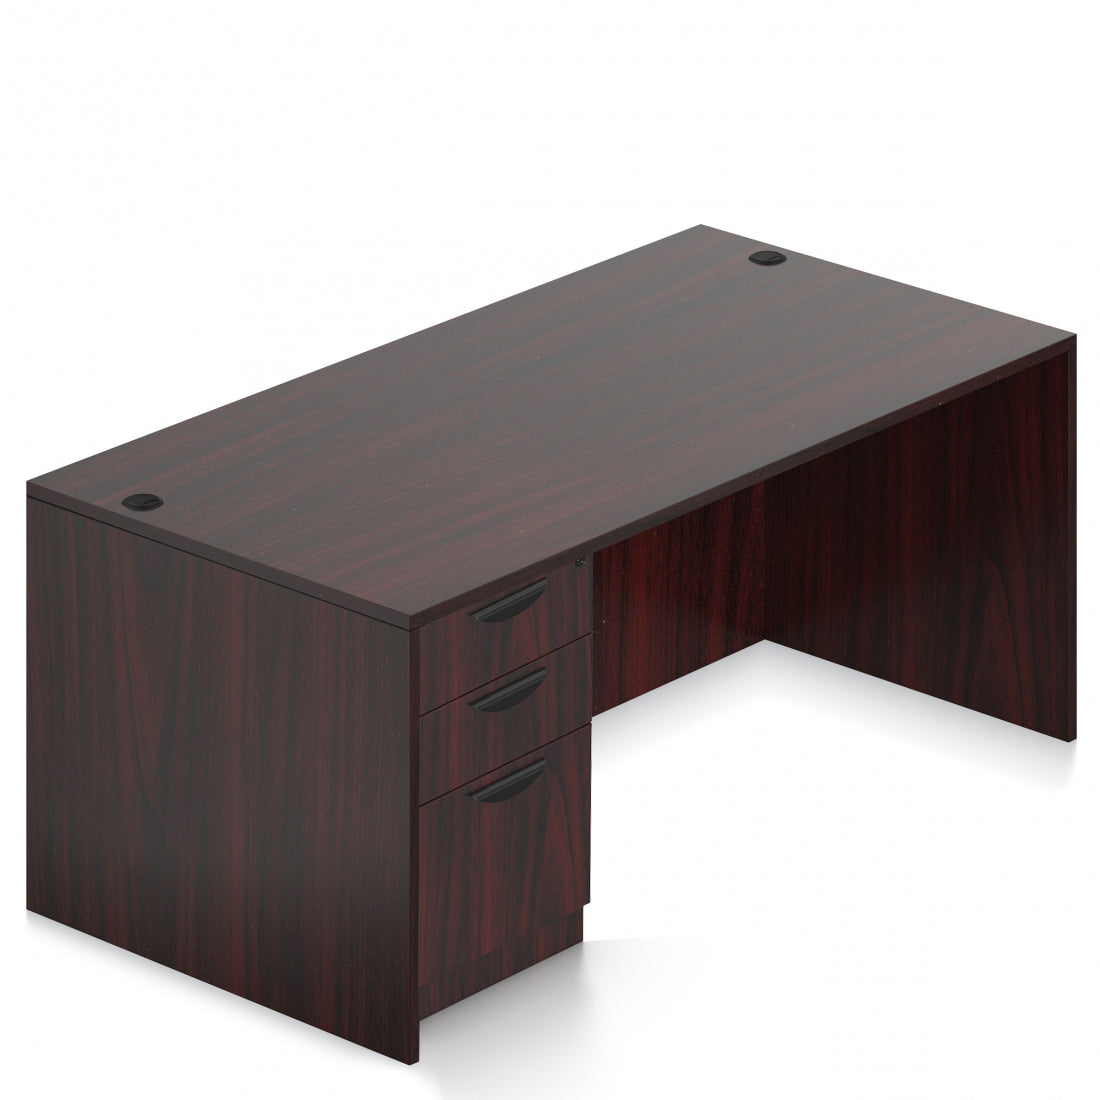 OTG 71"W x 36"D Rectangular Desk - Single Full Pedestal